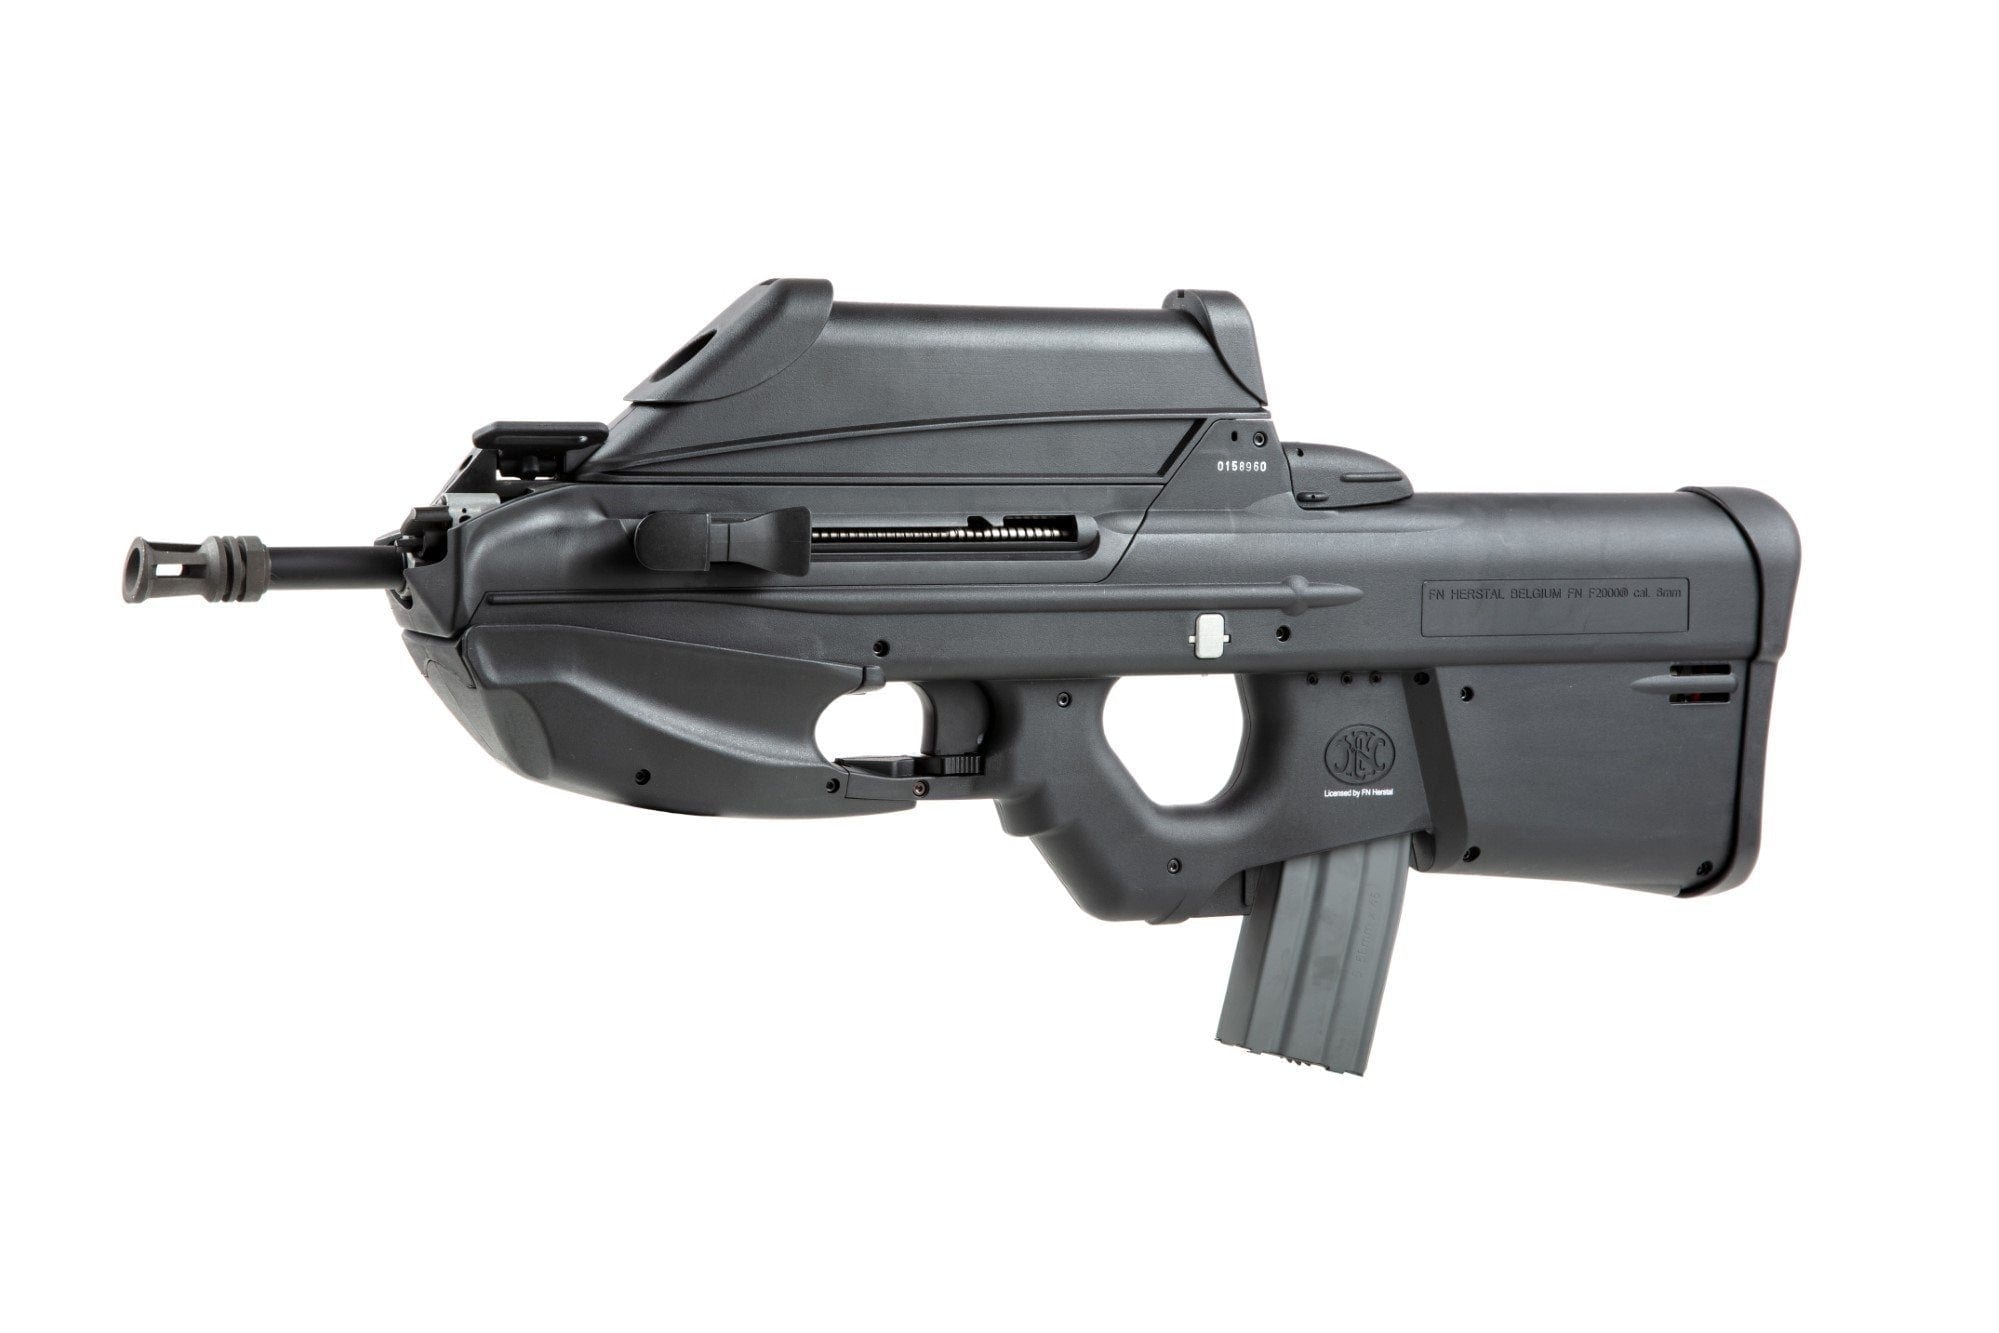 f2000 assault rifle